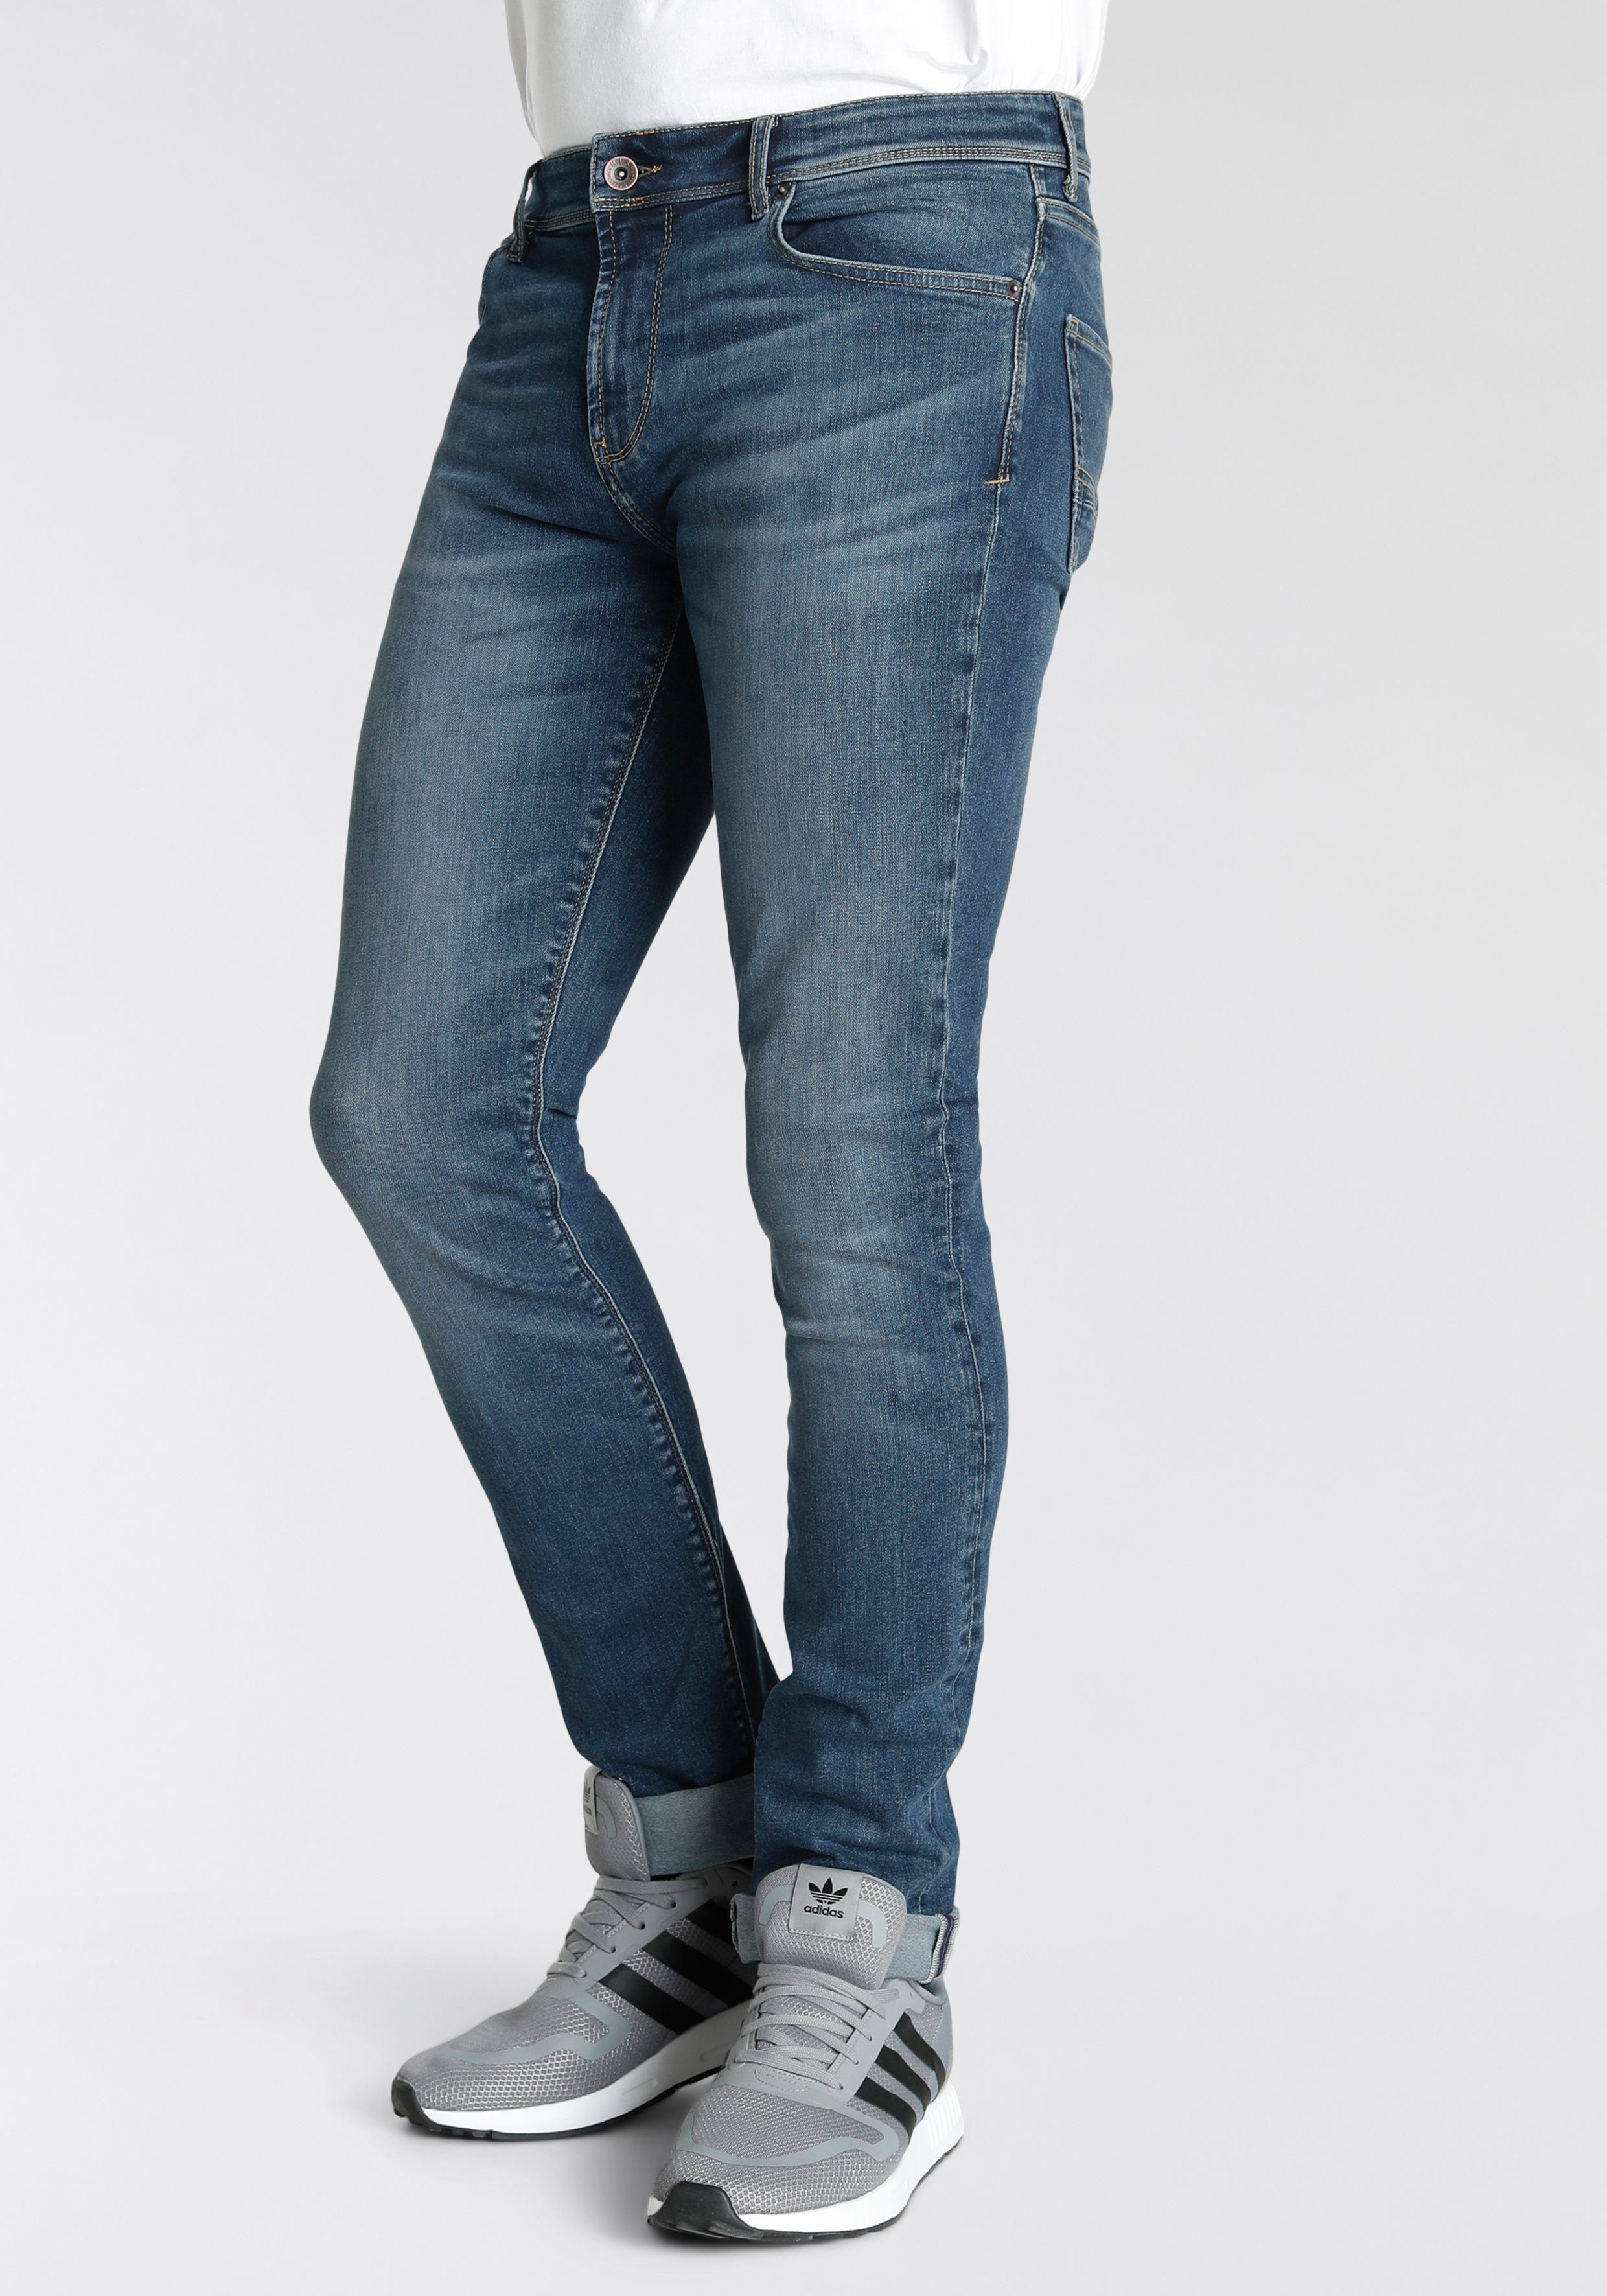 H.I.S Straight-Jeans Boyd Ökologische, wassersparende Produktion durch Ozon Wash blue wash